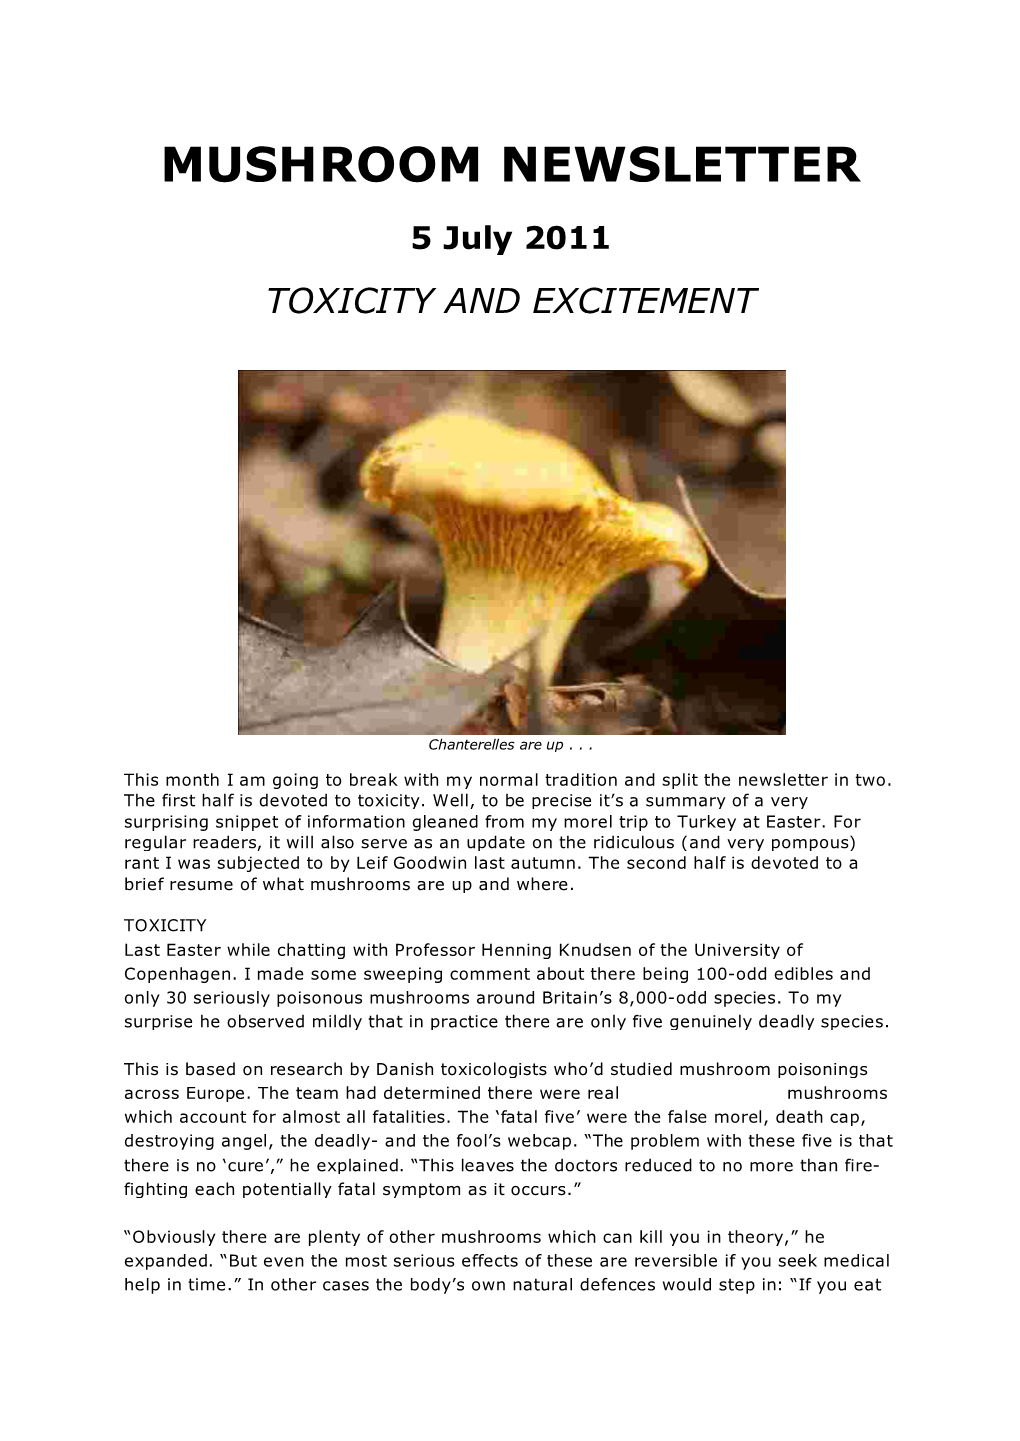 Mushroom Newsletter